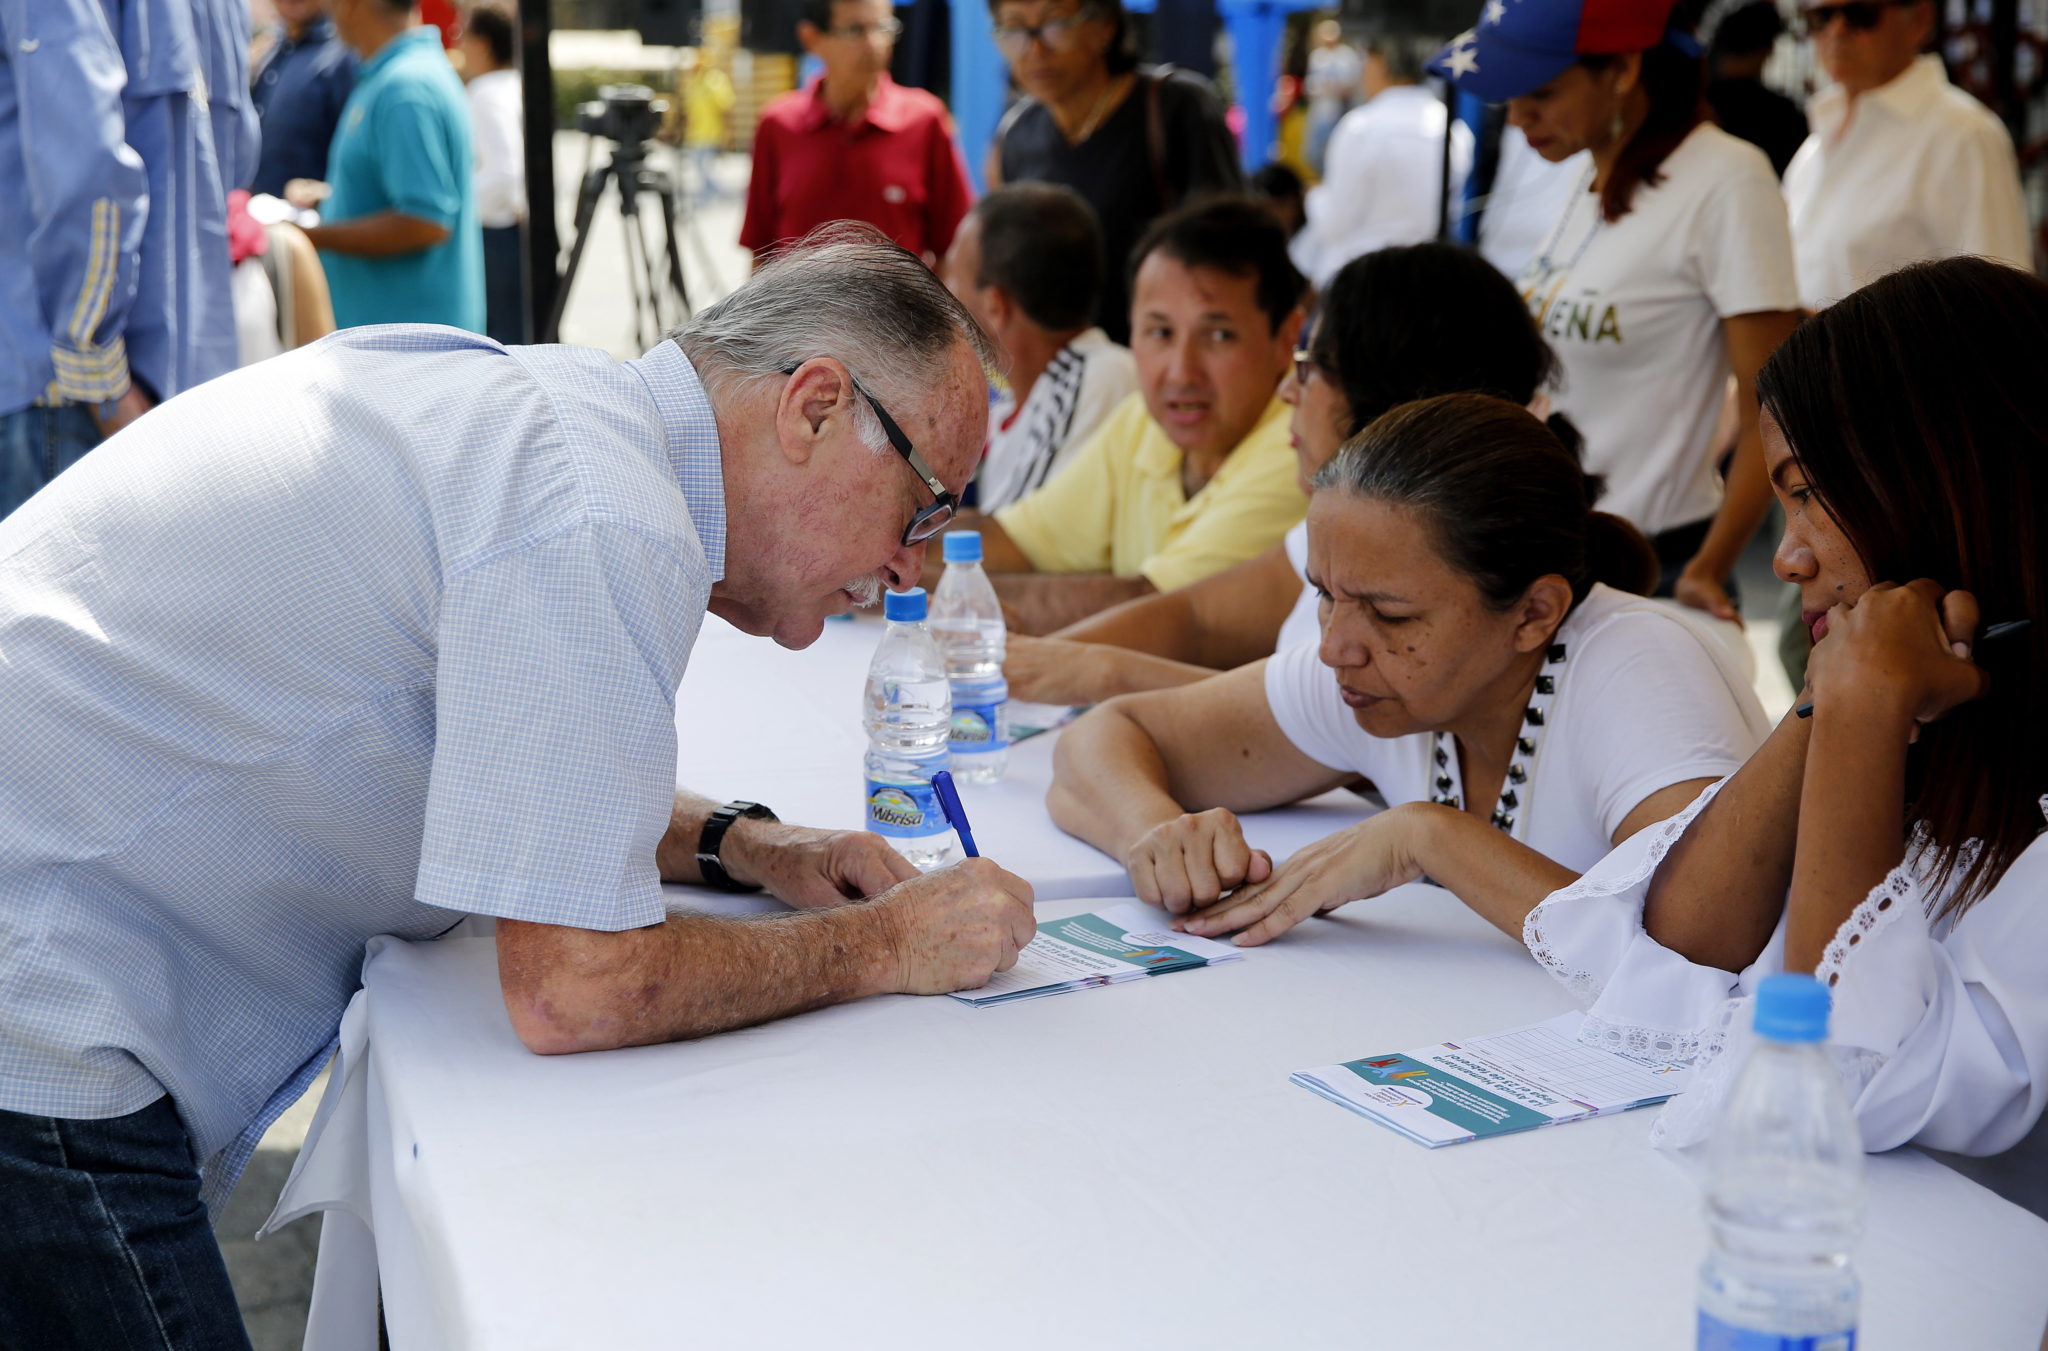 Wenezuela, Caracas: akcja podpisywania wniosku o wjazd pomocy humanitarnej do kraju - akcja #VolunteersXVenezuela oraz Koalicji Help and Liberty Venezuela, fot. Leonardo Munoz, PAP/EPA 